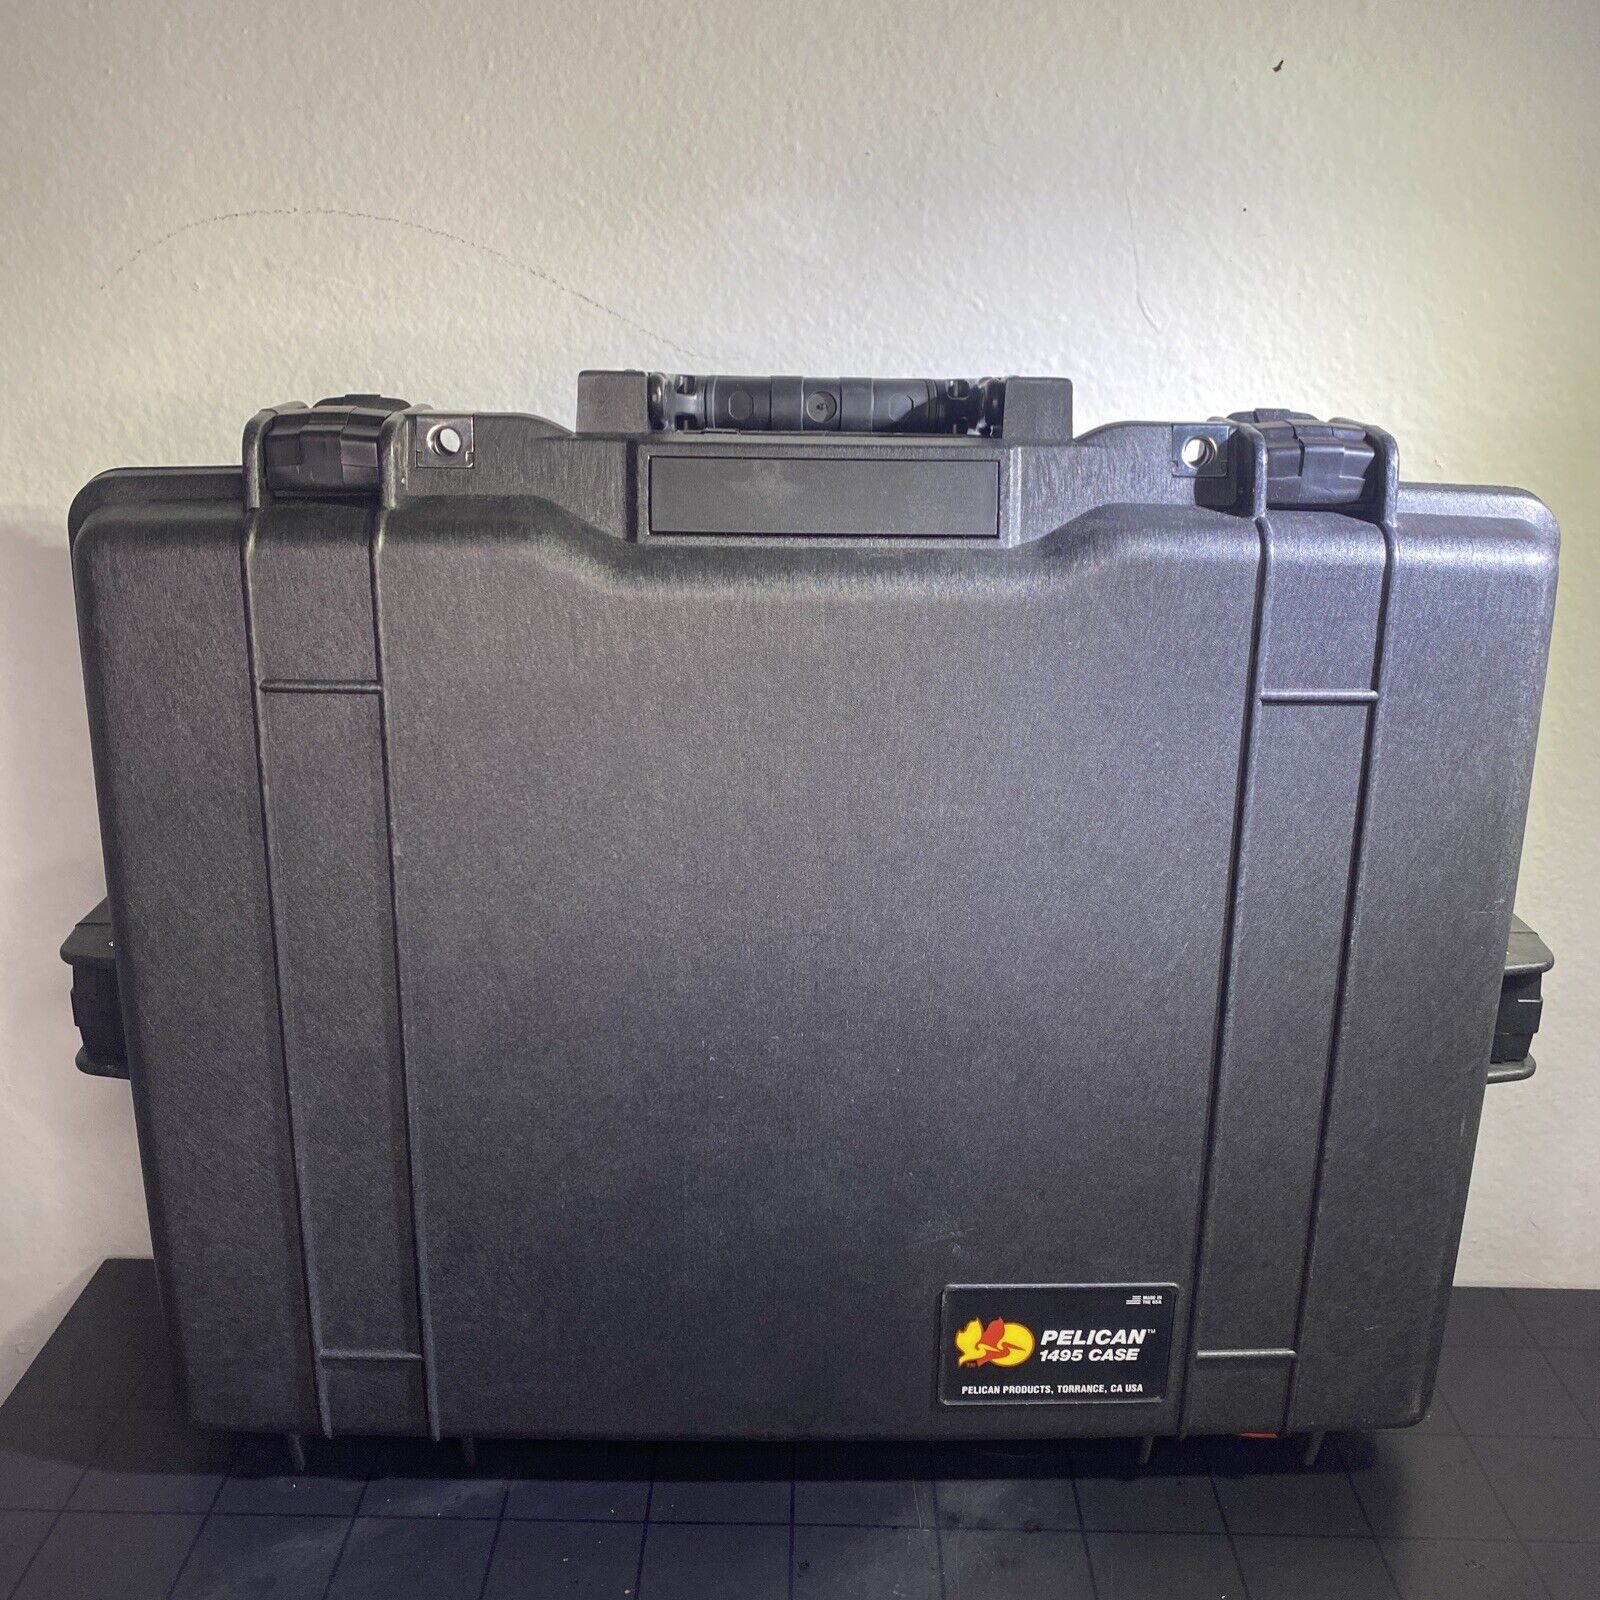 Pelican 1495 Protector Briefcase Black w/ Shoulder Strap, Combination Lock, Foam